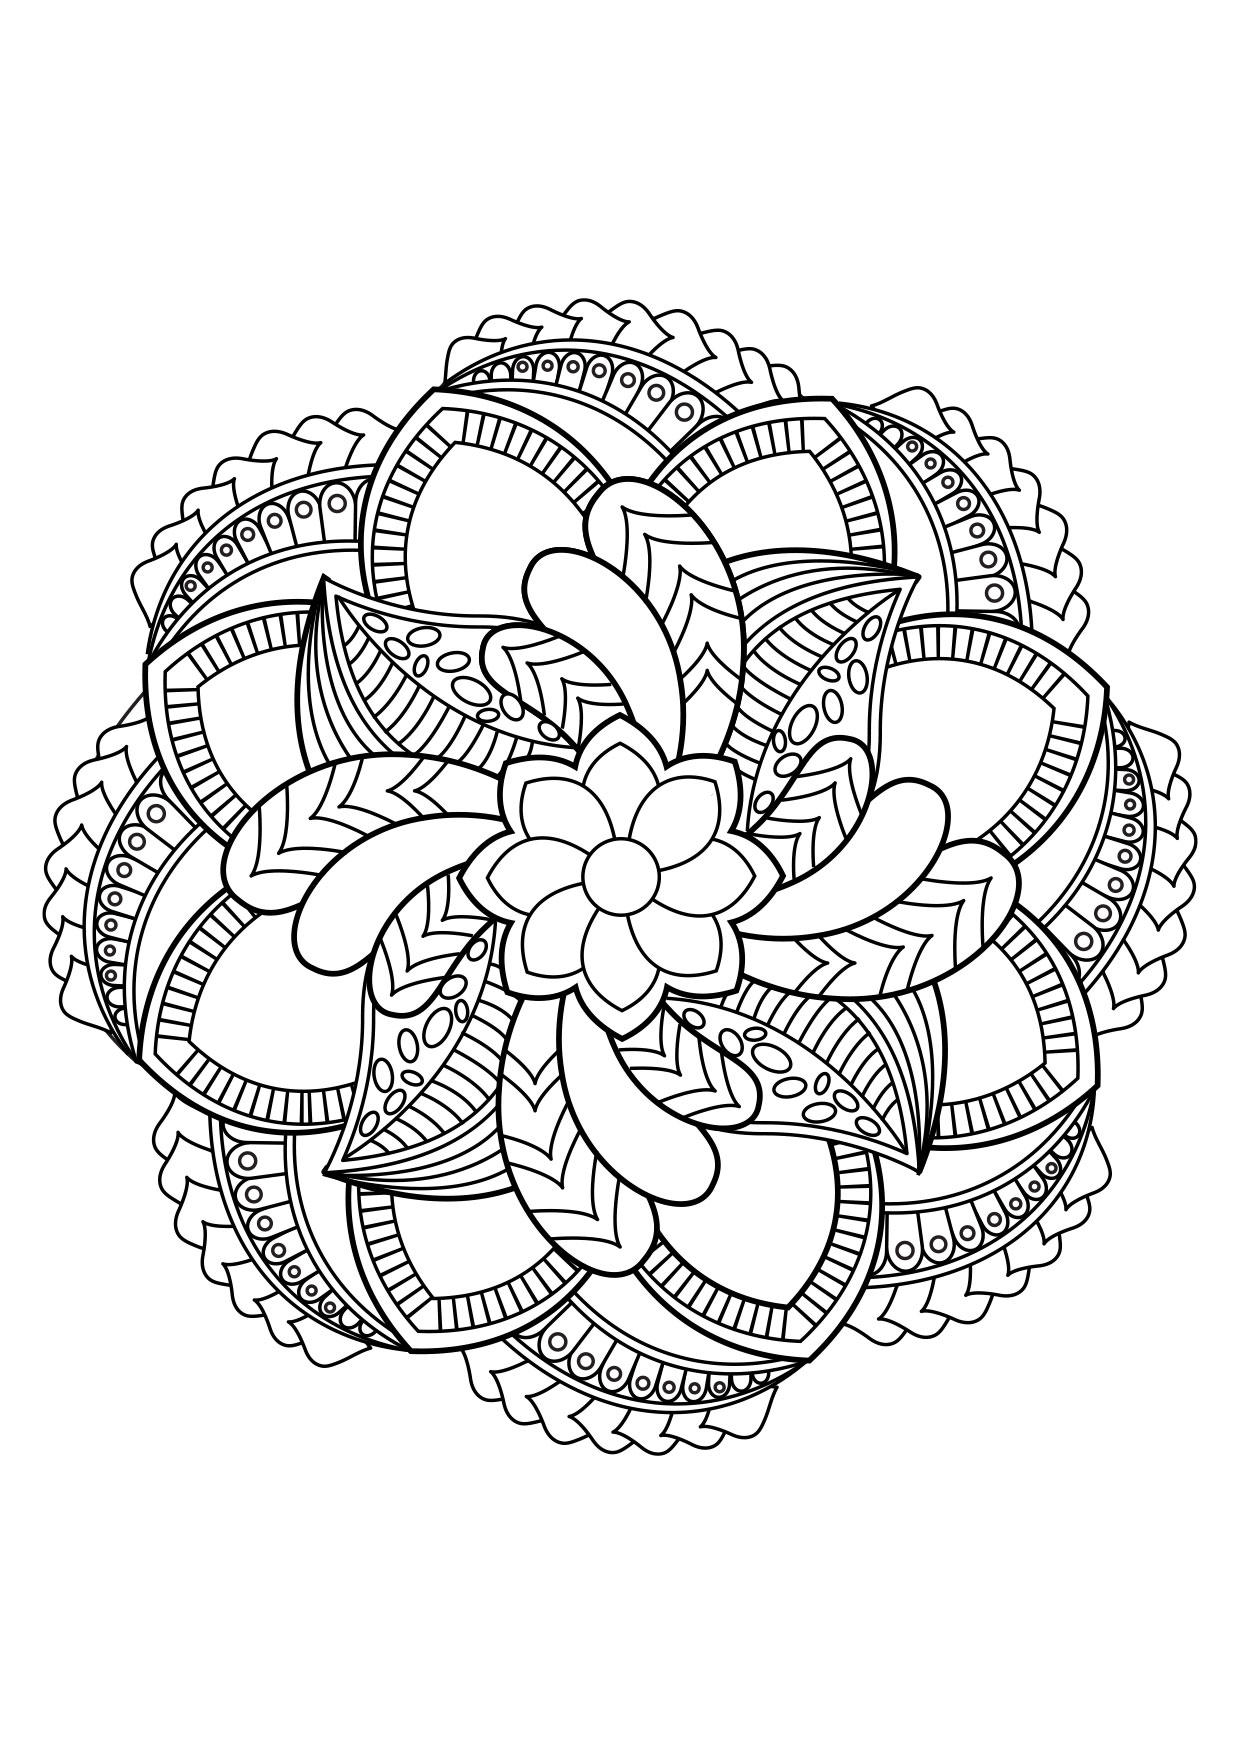 Dibujo Para Colorear Mandala Dibujos Para Imprimir Gratis